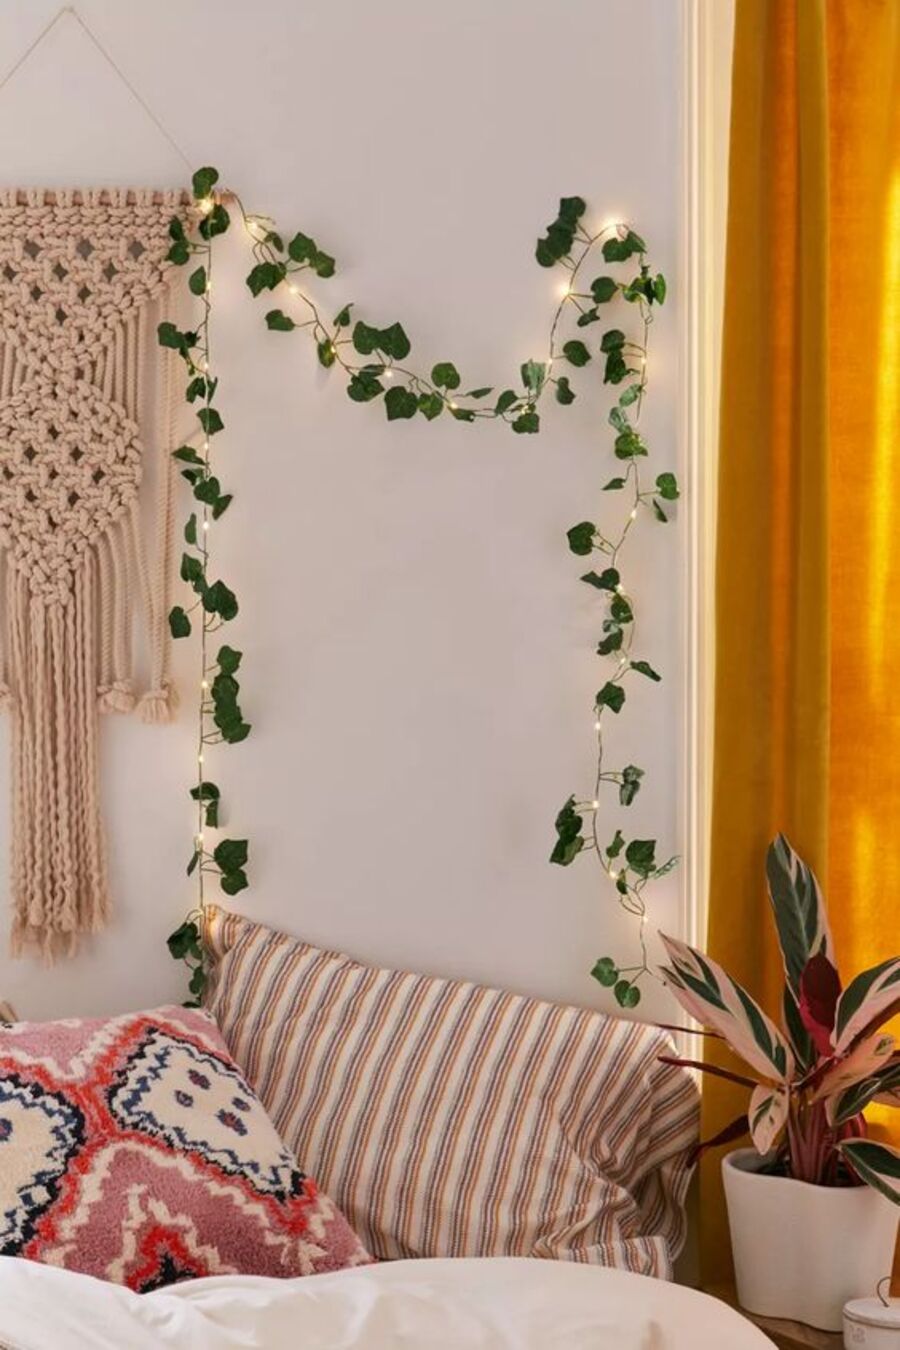 Detalle de un rincón boho chic donde se aprecia parte de una cortina mostaza, cojines estampados de colores, una planta, un adorno de pared de macramé y una planta con luces decorativas.